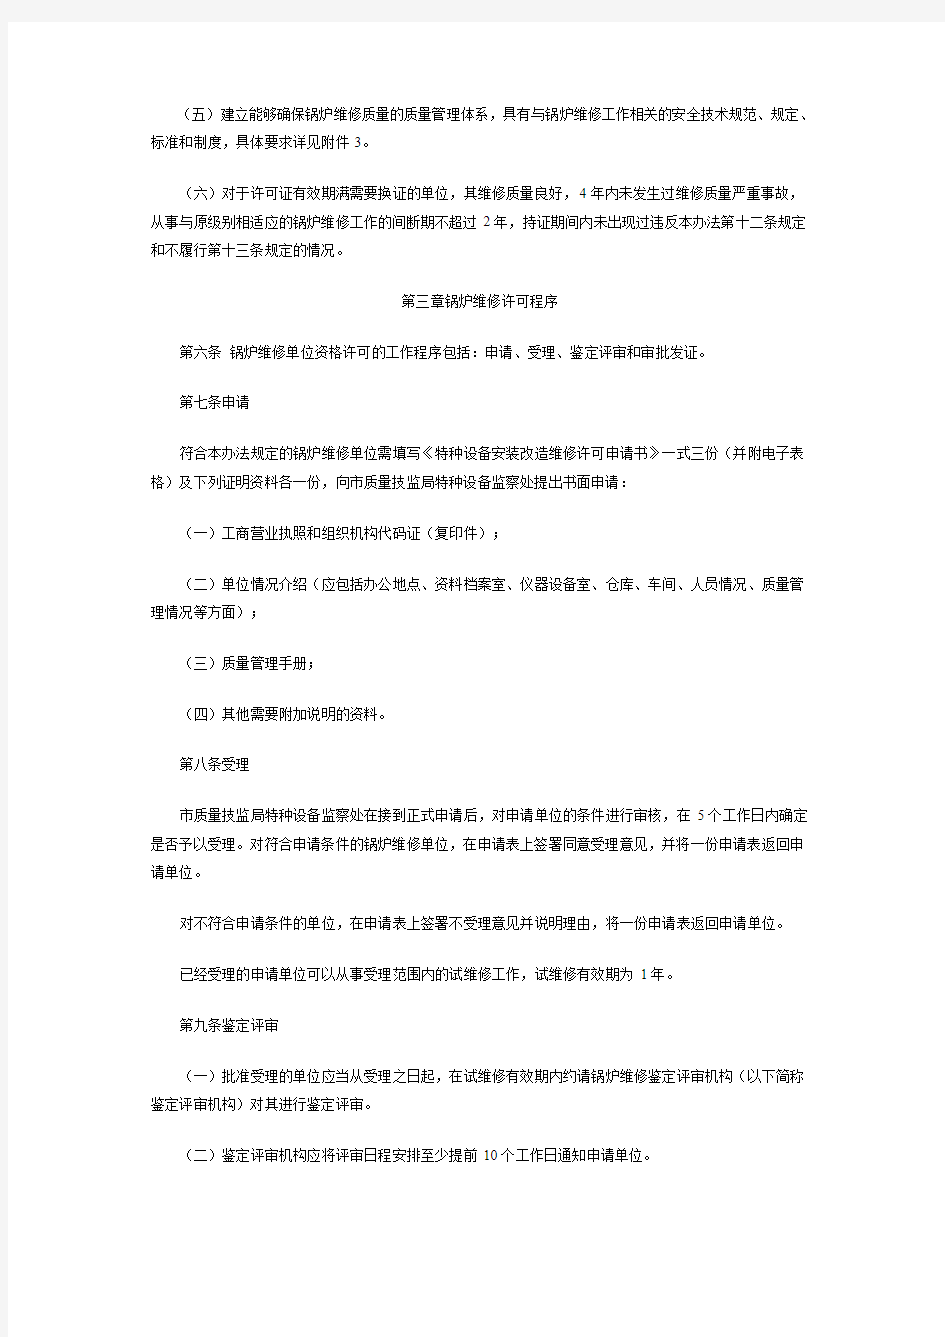 上海市锅炉维修单位监督管理办法